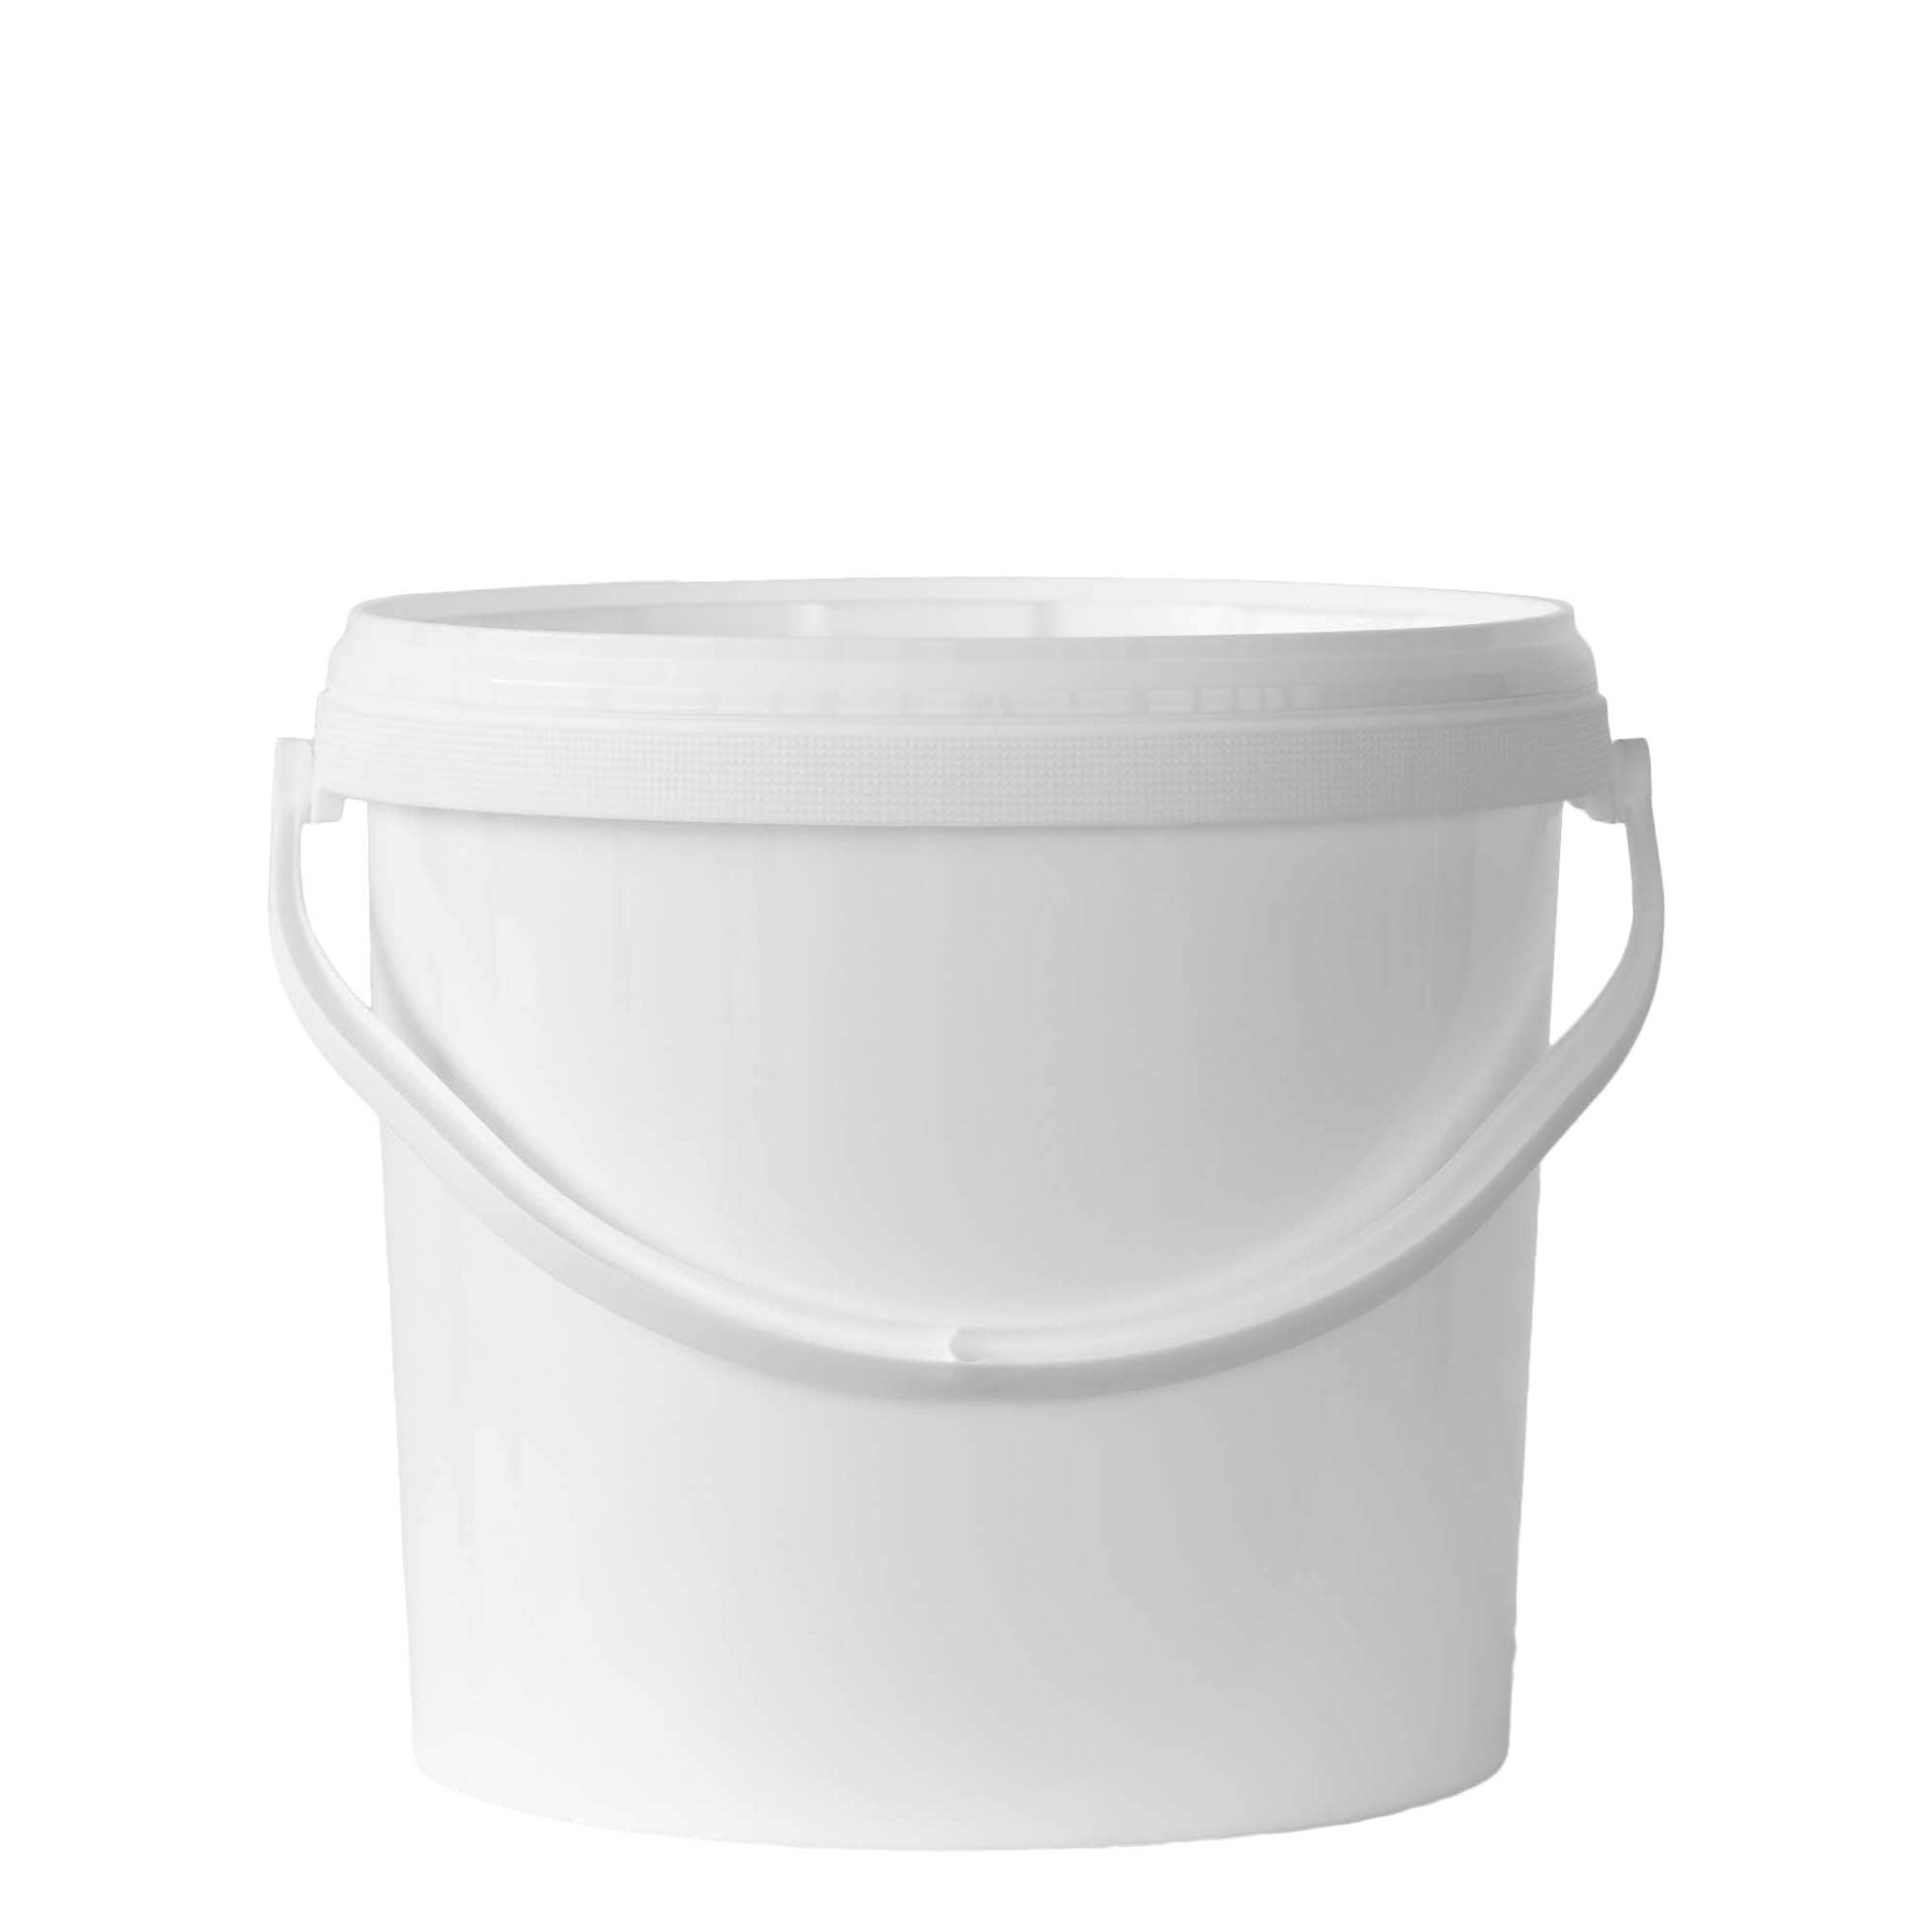 12.5 ml bucket, PP plastic, white